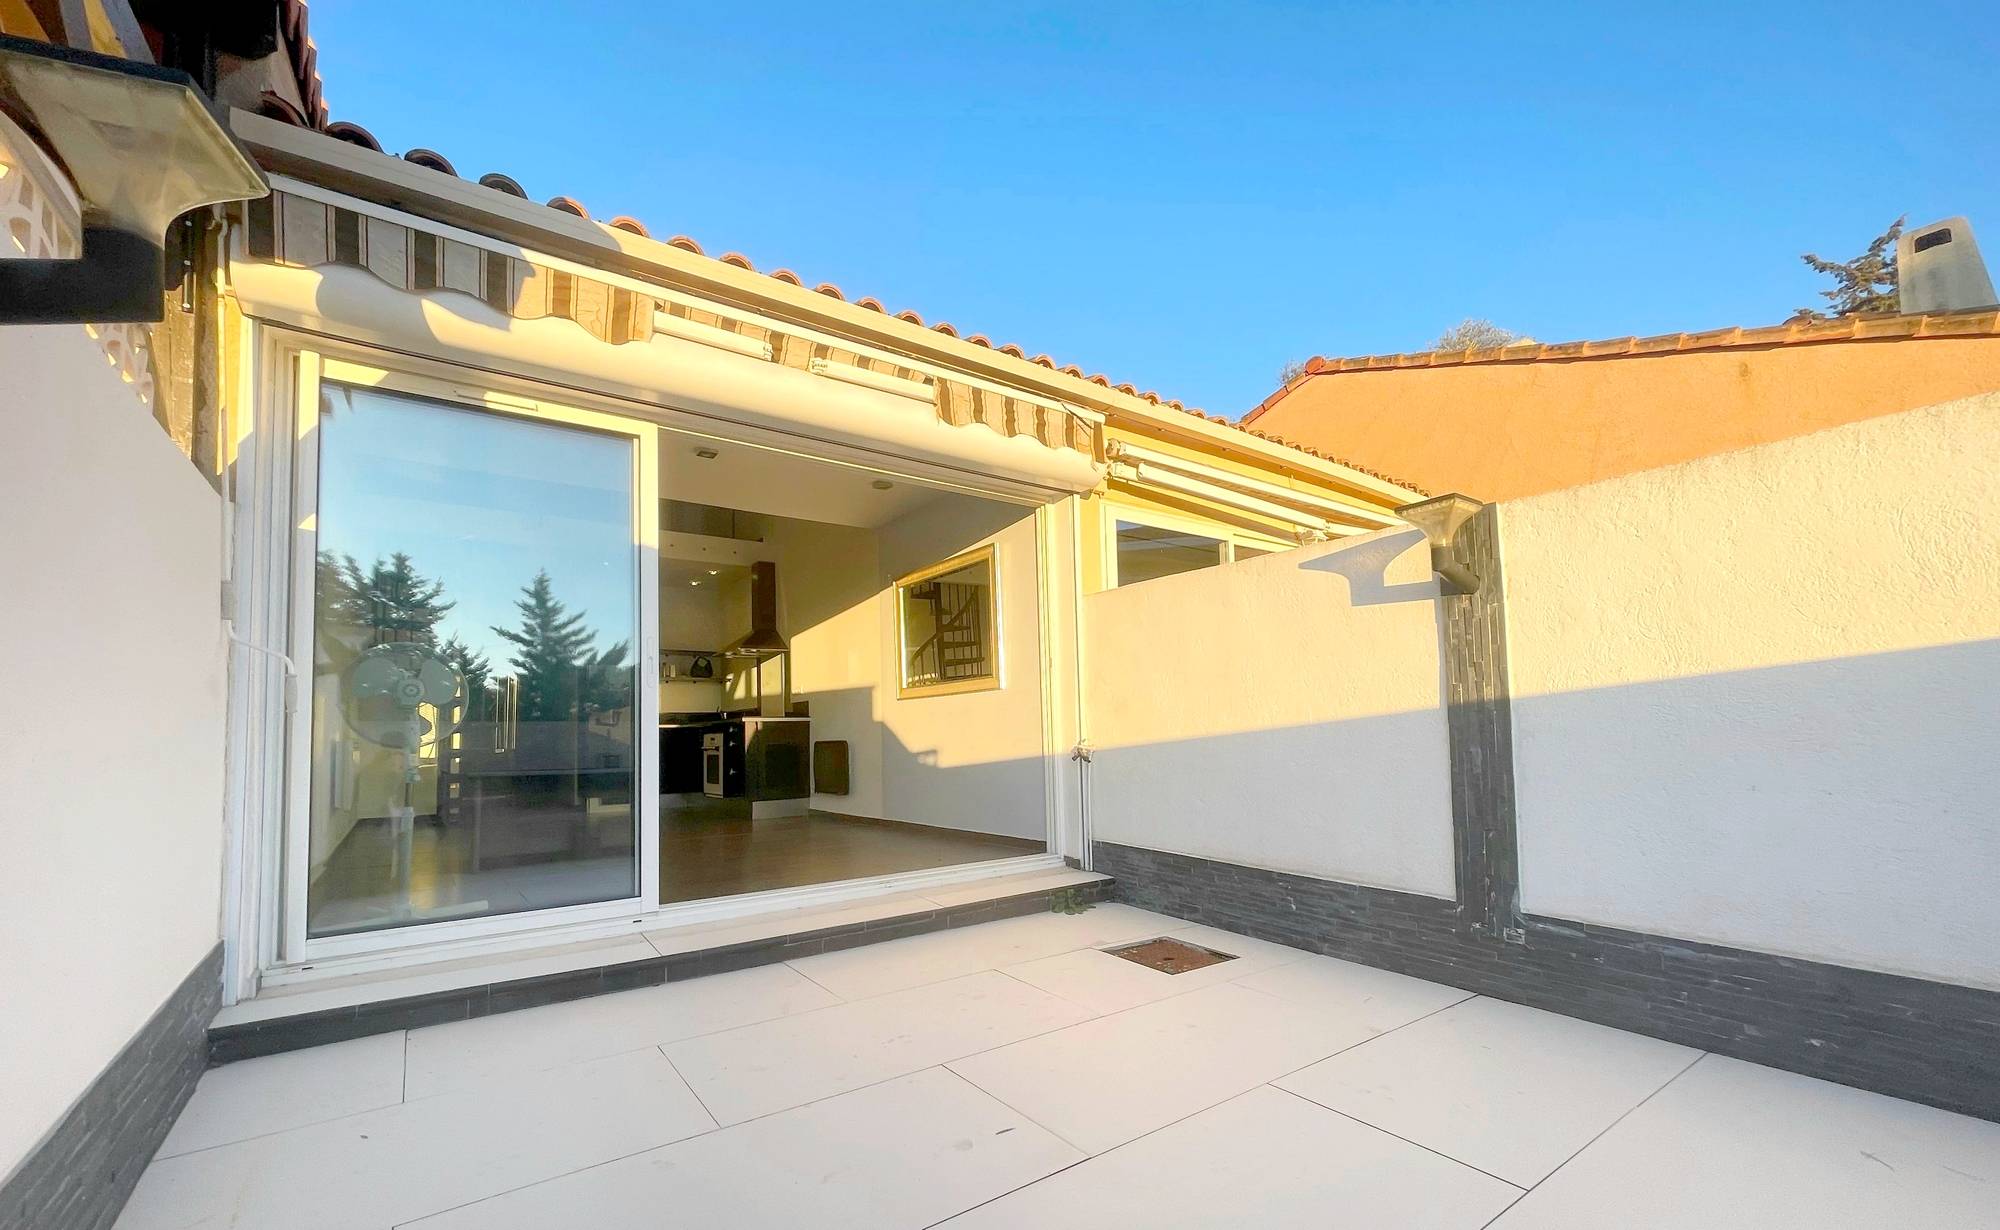 Villa club avec terrasse tropézienne à vendre à Sanary, route de Bandol